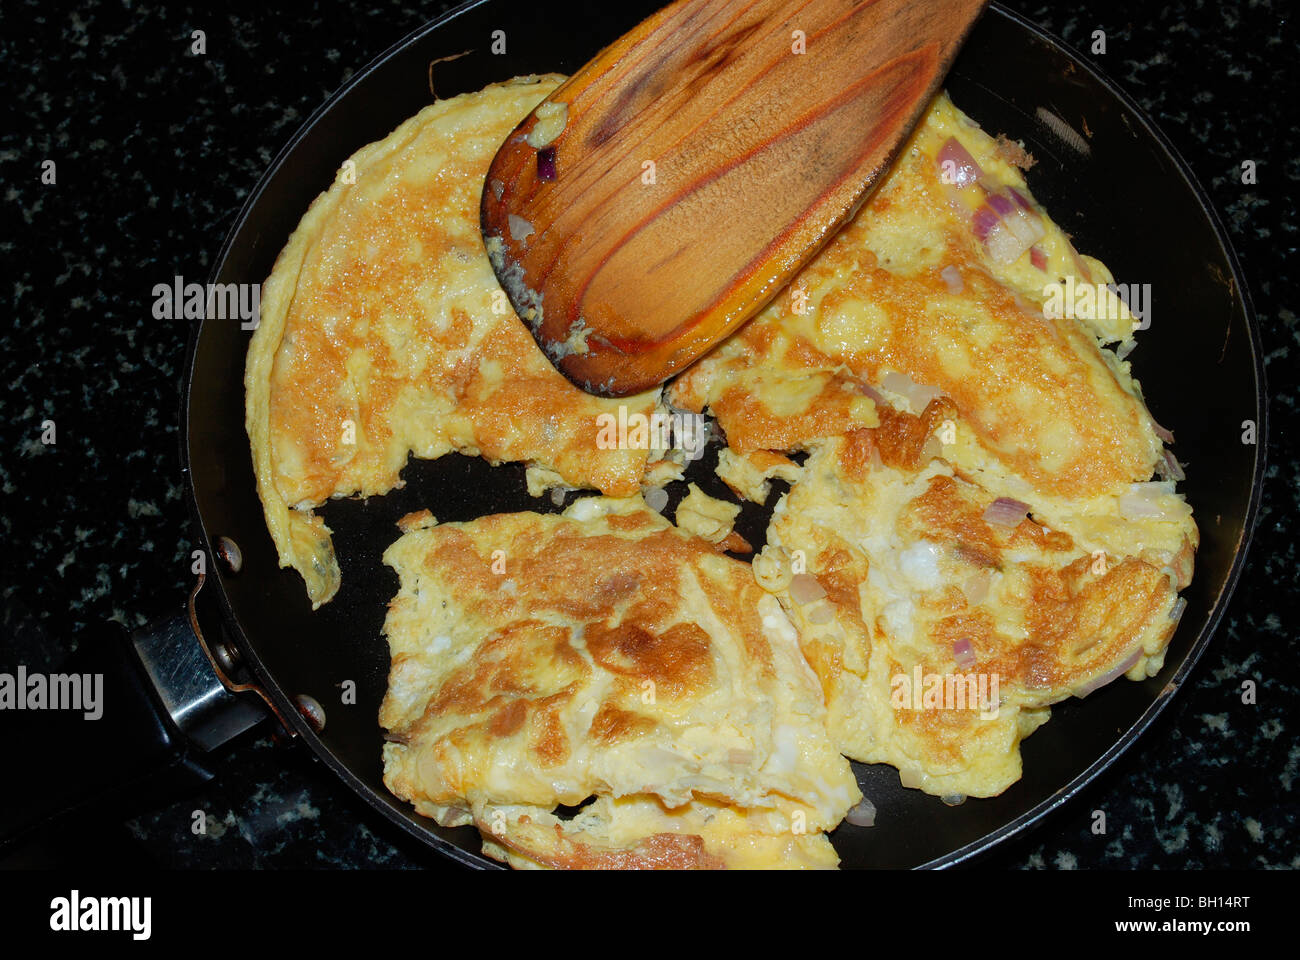 omlet making Stock Photo